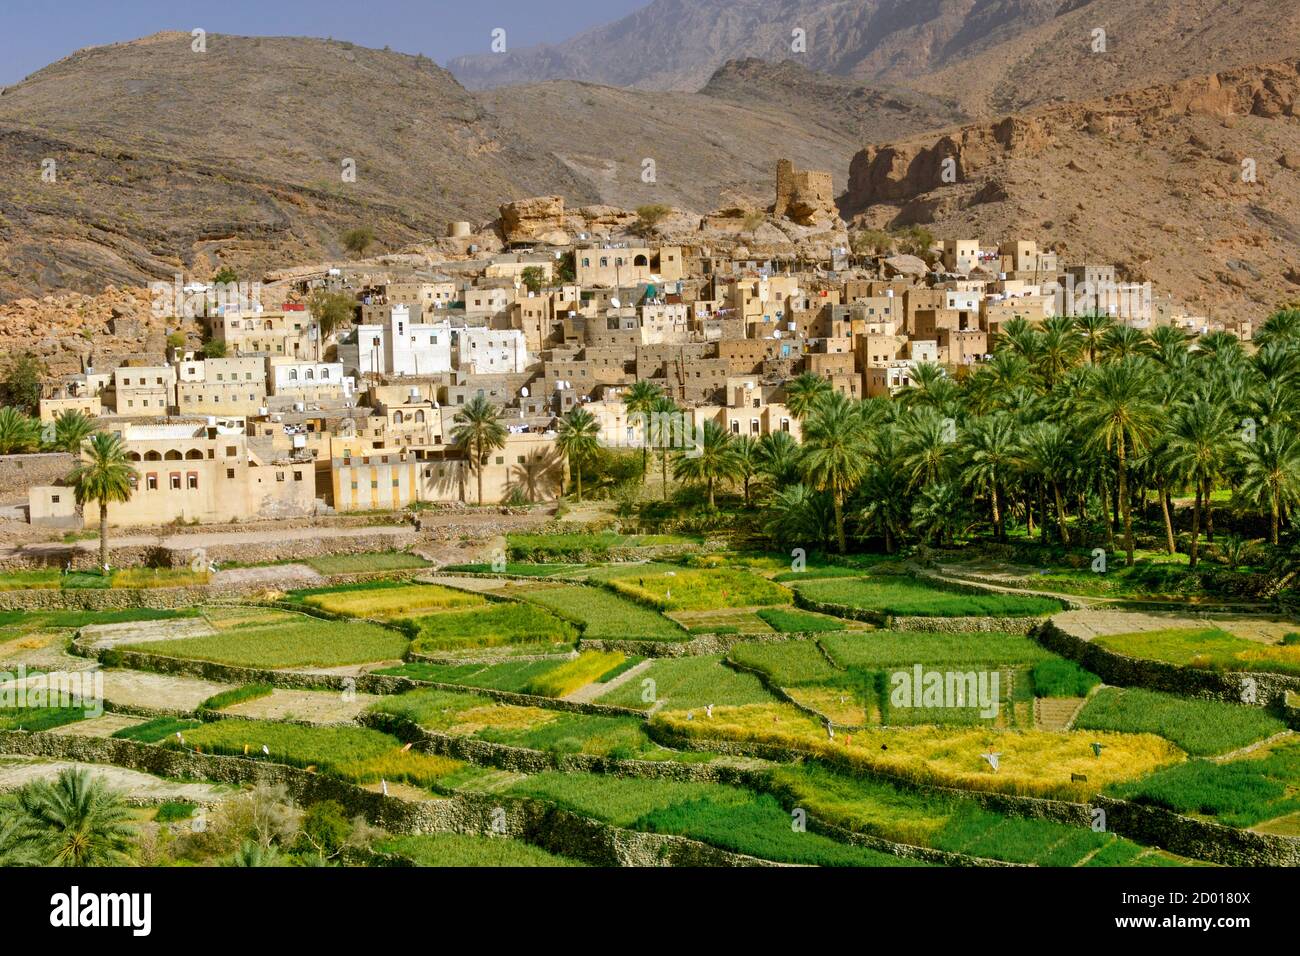 El pueblo de Bilad Seet y sus plantaciones en Wadi Bani Auf en las montañas Jebel Akhdar de Omán. Foto de stock